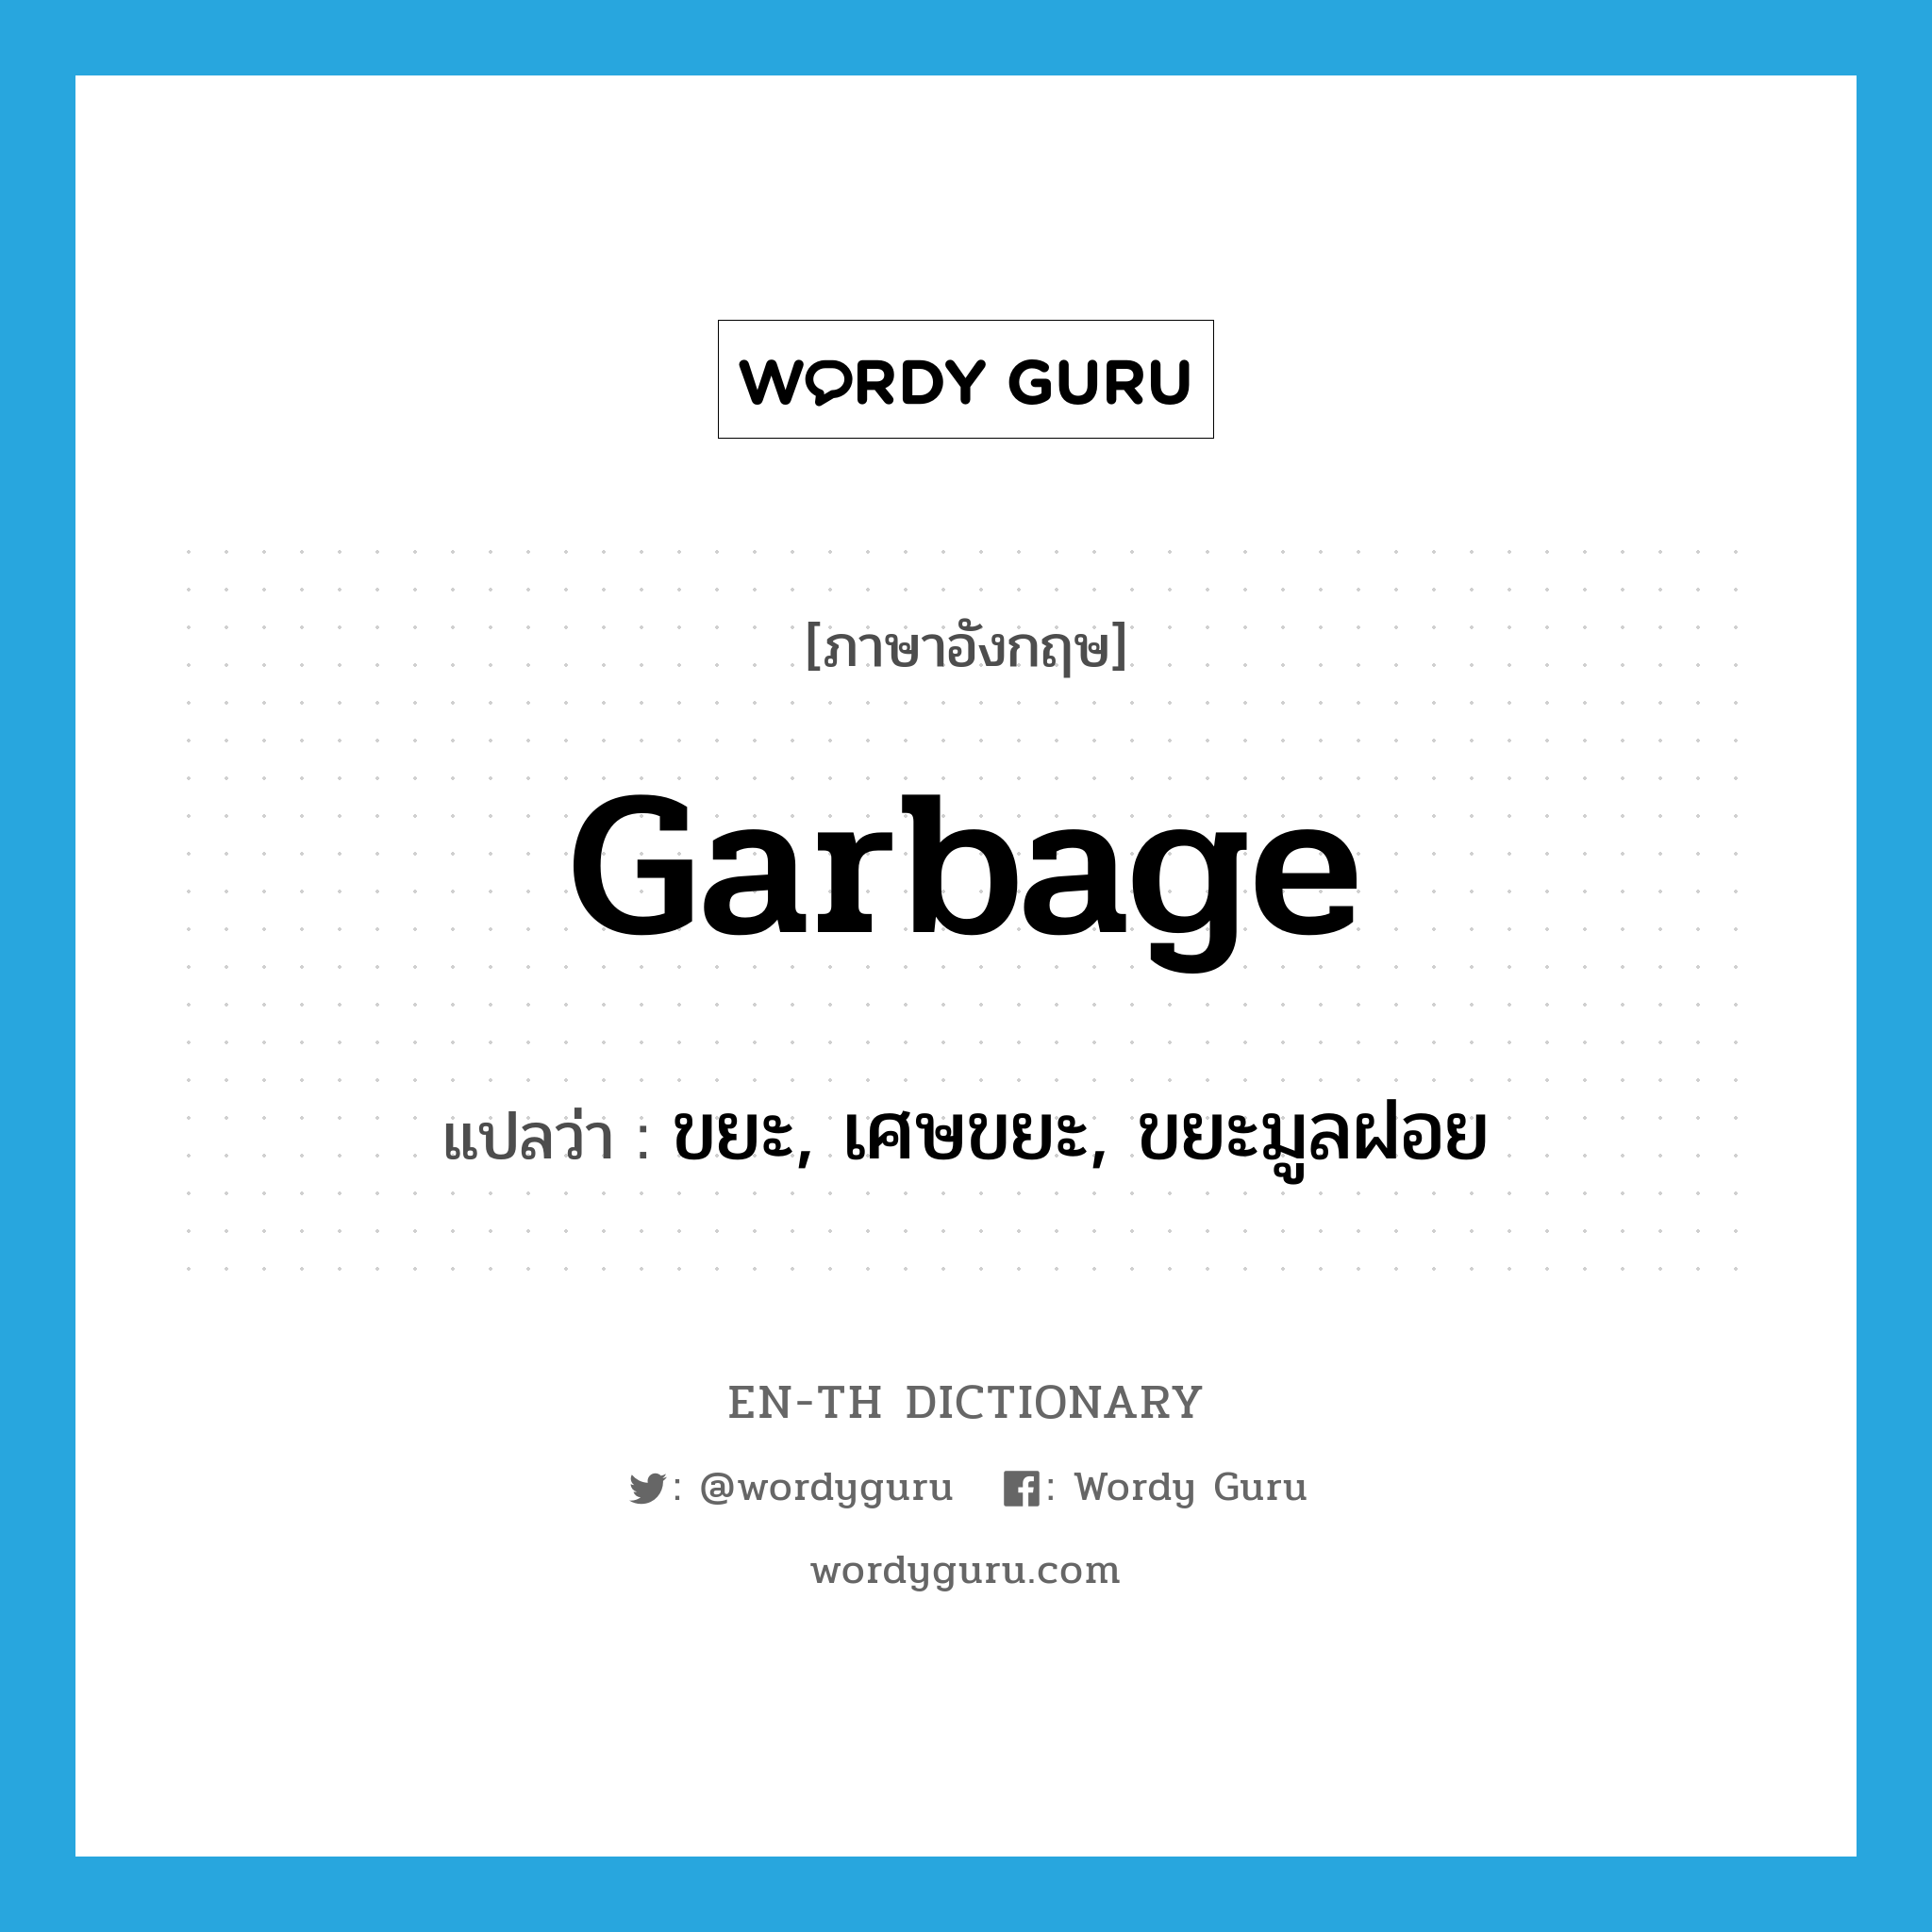 garbage แปลว่า?, คำศัพท์ภาษาอังกฤษ garbage แปลว่า ขยะ, เศษขยะ, ขยะมูลฝอย ประเภท N หมวด N